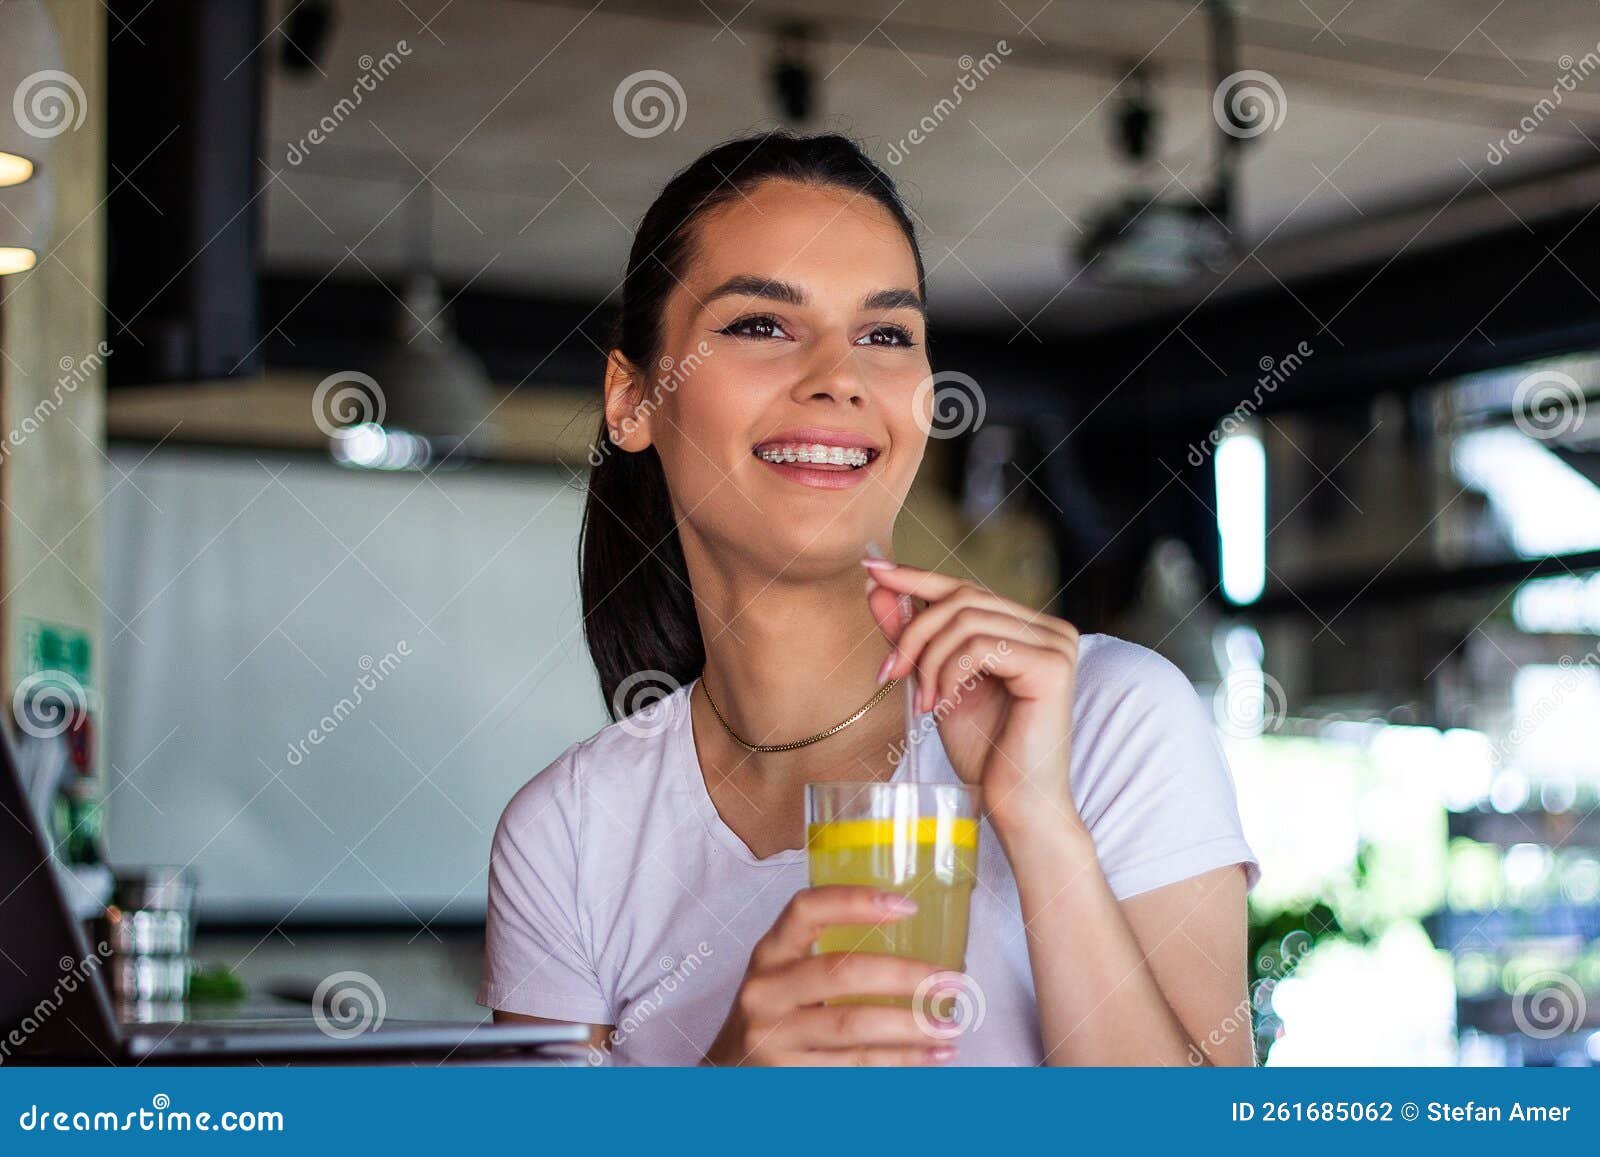 mujer disfrutando de una bebida de limon